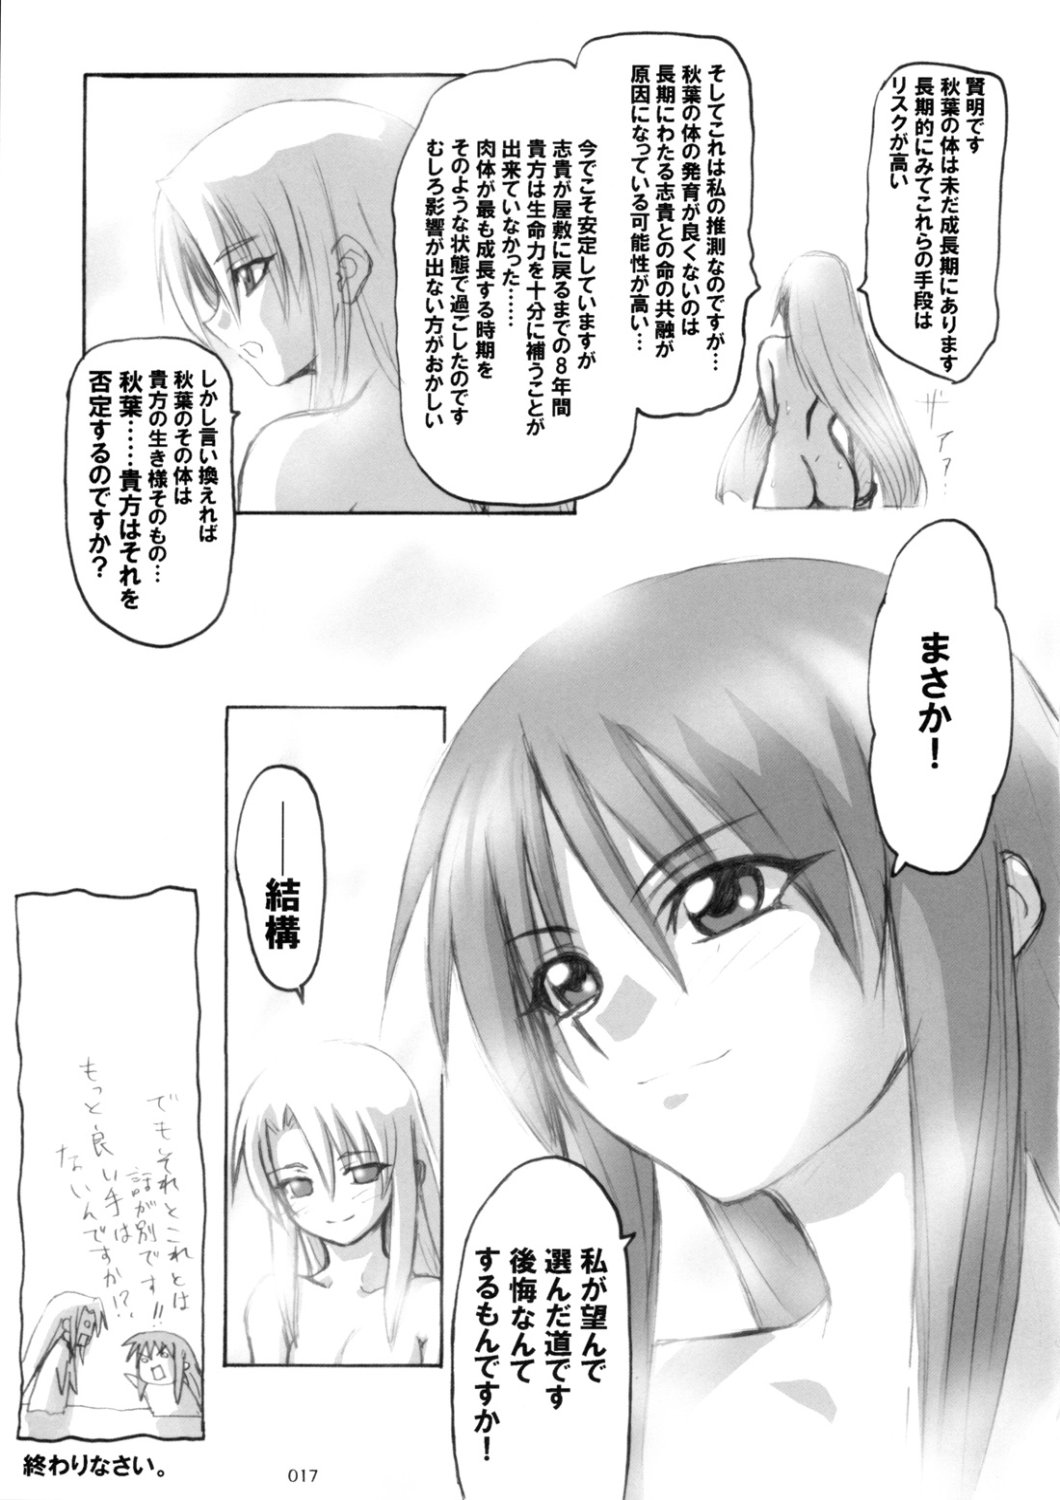 [Inochi no Furusato, Neko-bus Tei, Zangyaku Koui Teate] Akihamania [AKIHA MANIACS] (Tsukihime) page 16 full